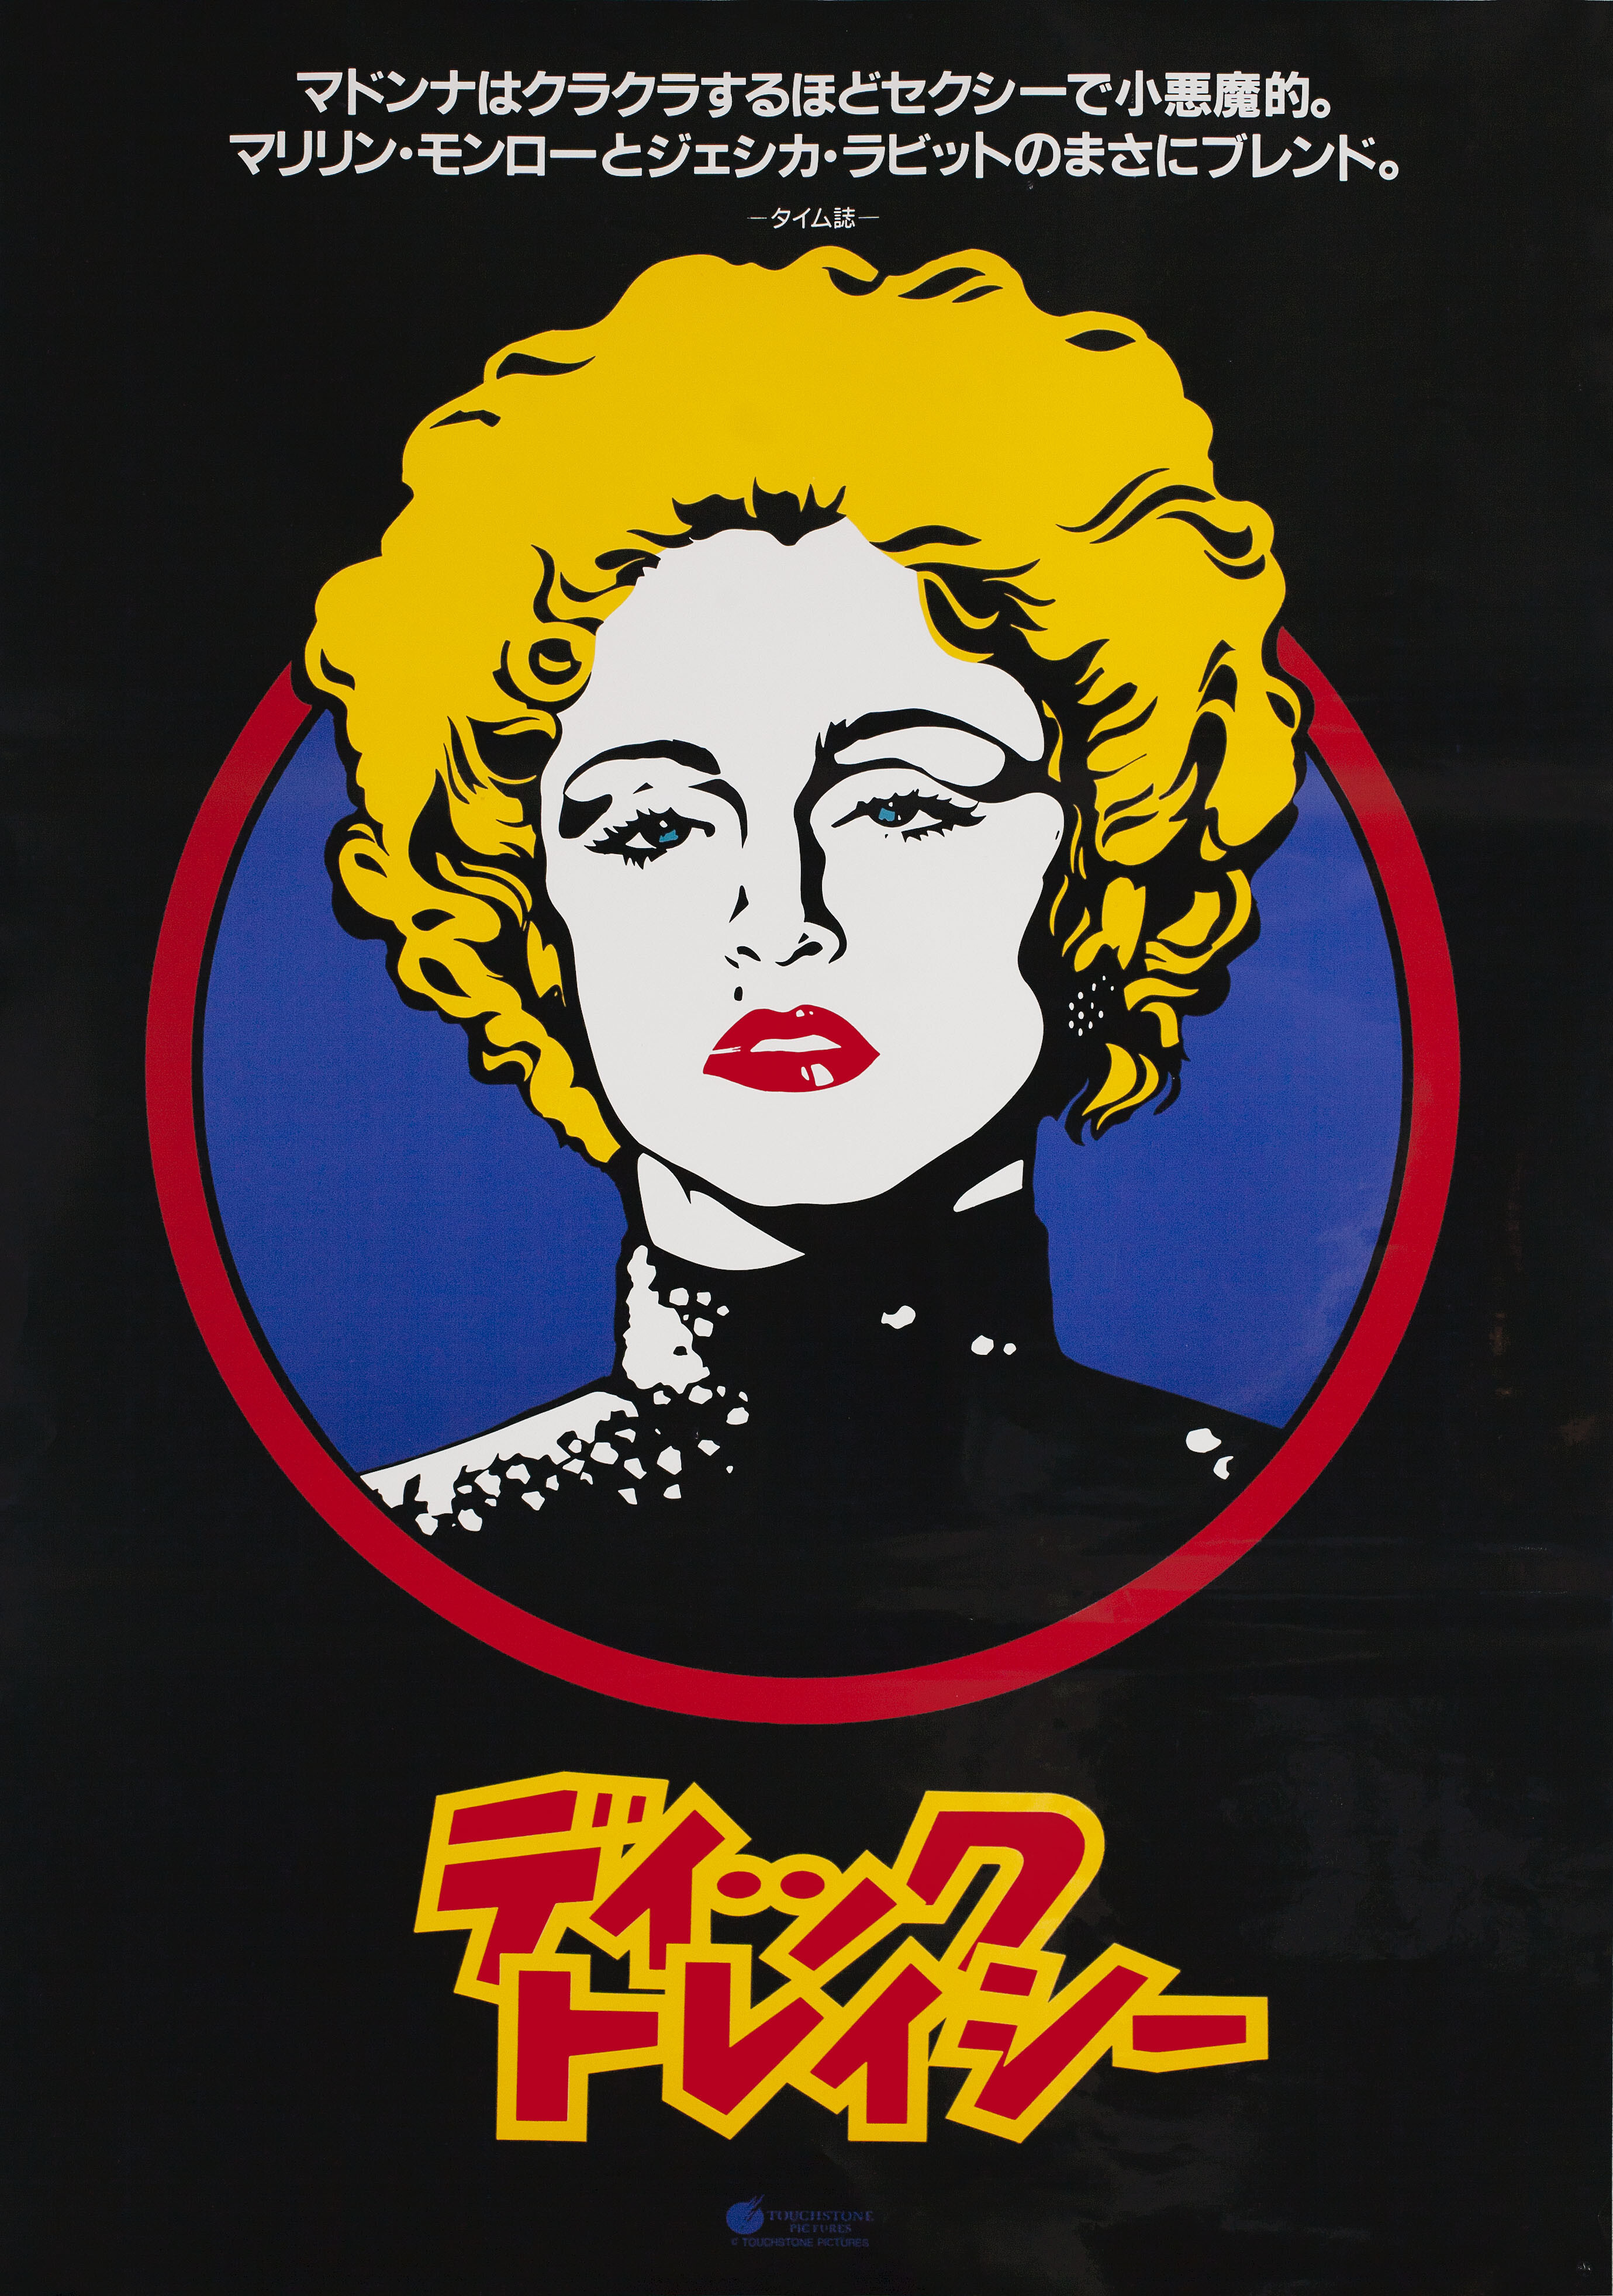 Дик Трейси (Dick Tracy, 1990), режиссёр Уоррен Битти, японский постер к фильму (графический дизайн, 1990 год)